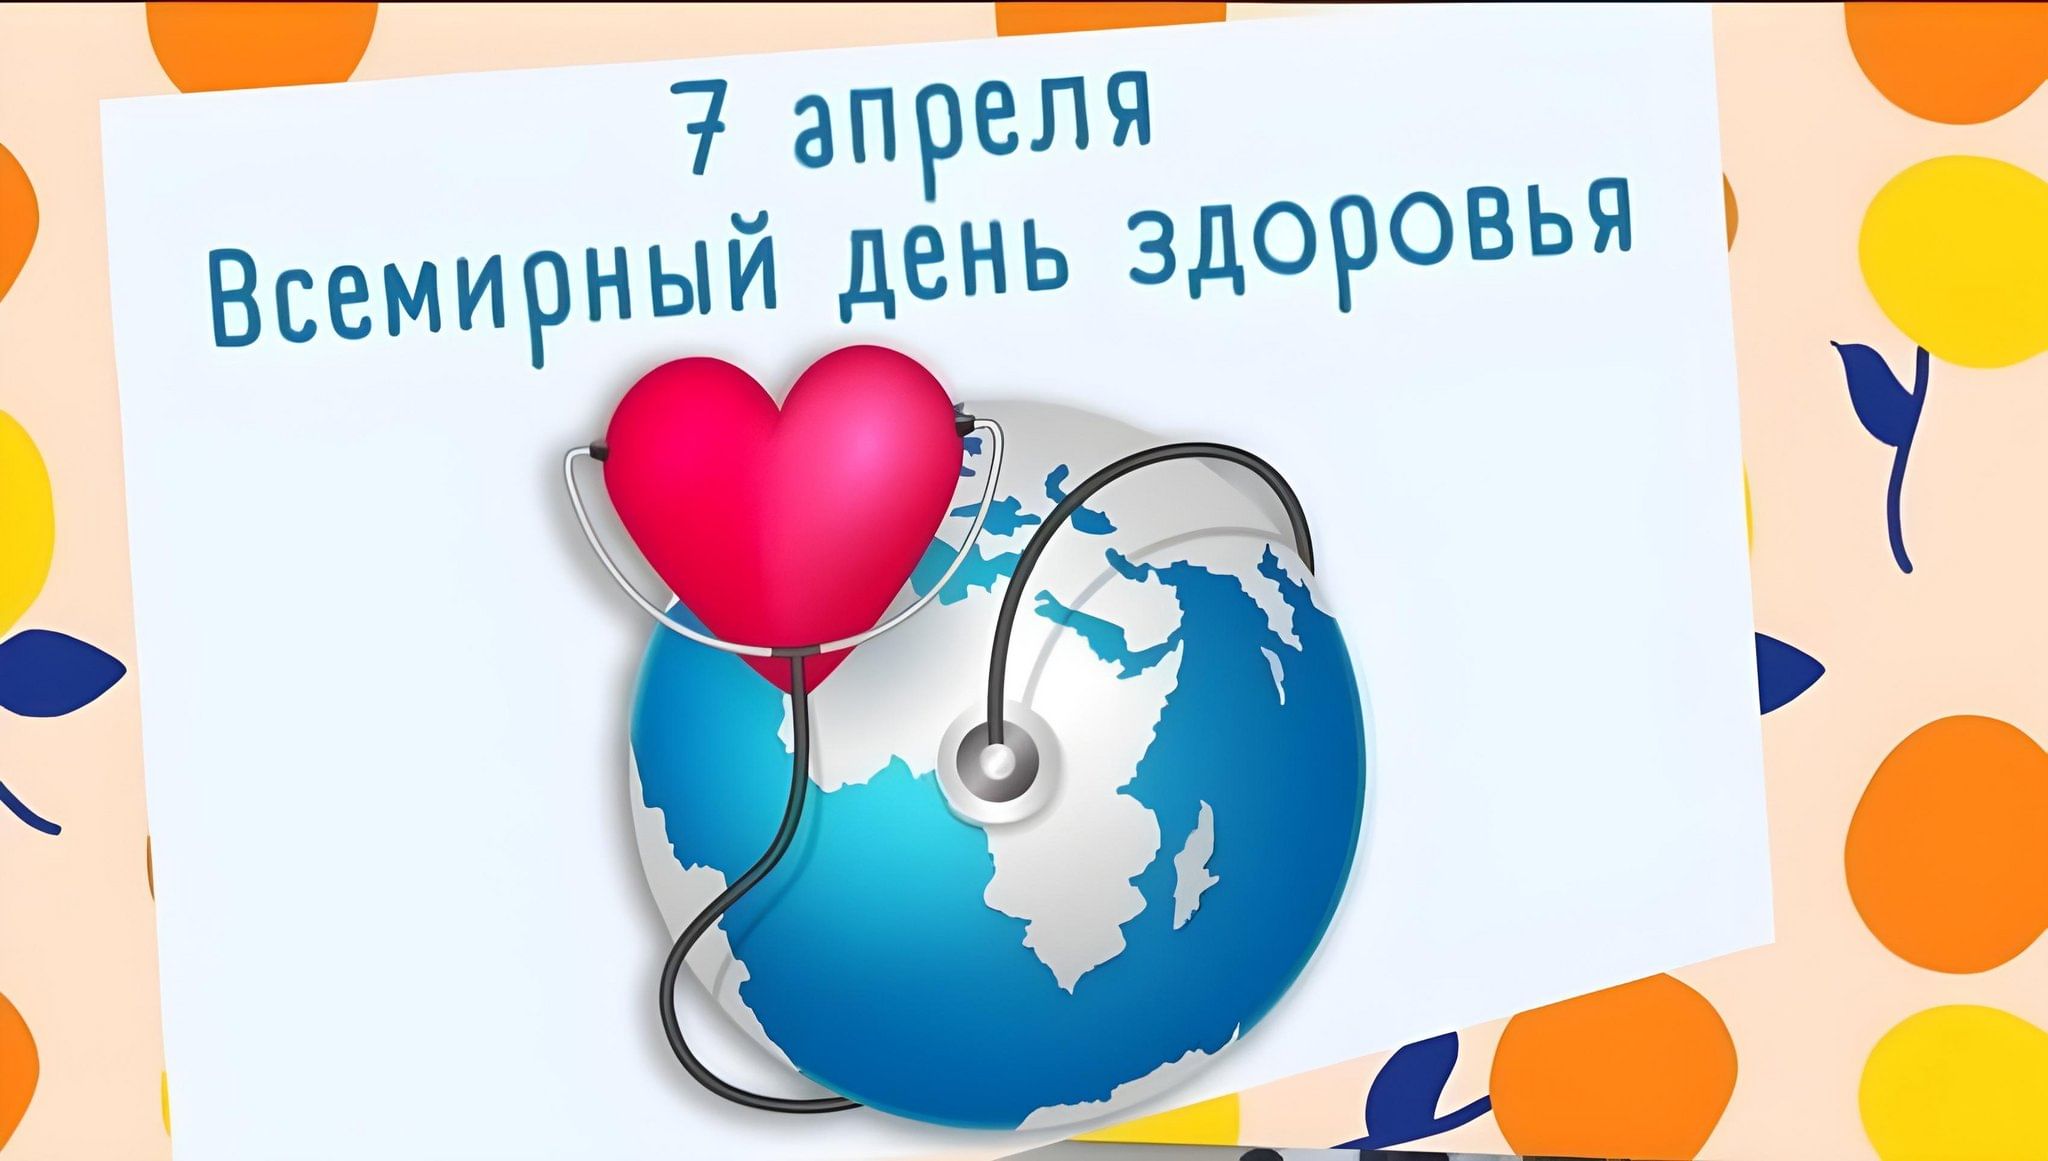  Ежегодно 7 апреля во всем мире отмечается Всемирный день здоровья, тема этого года - «Здоровье для всех»..